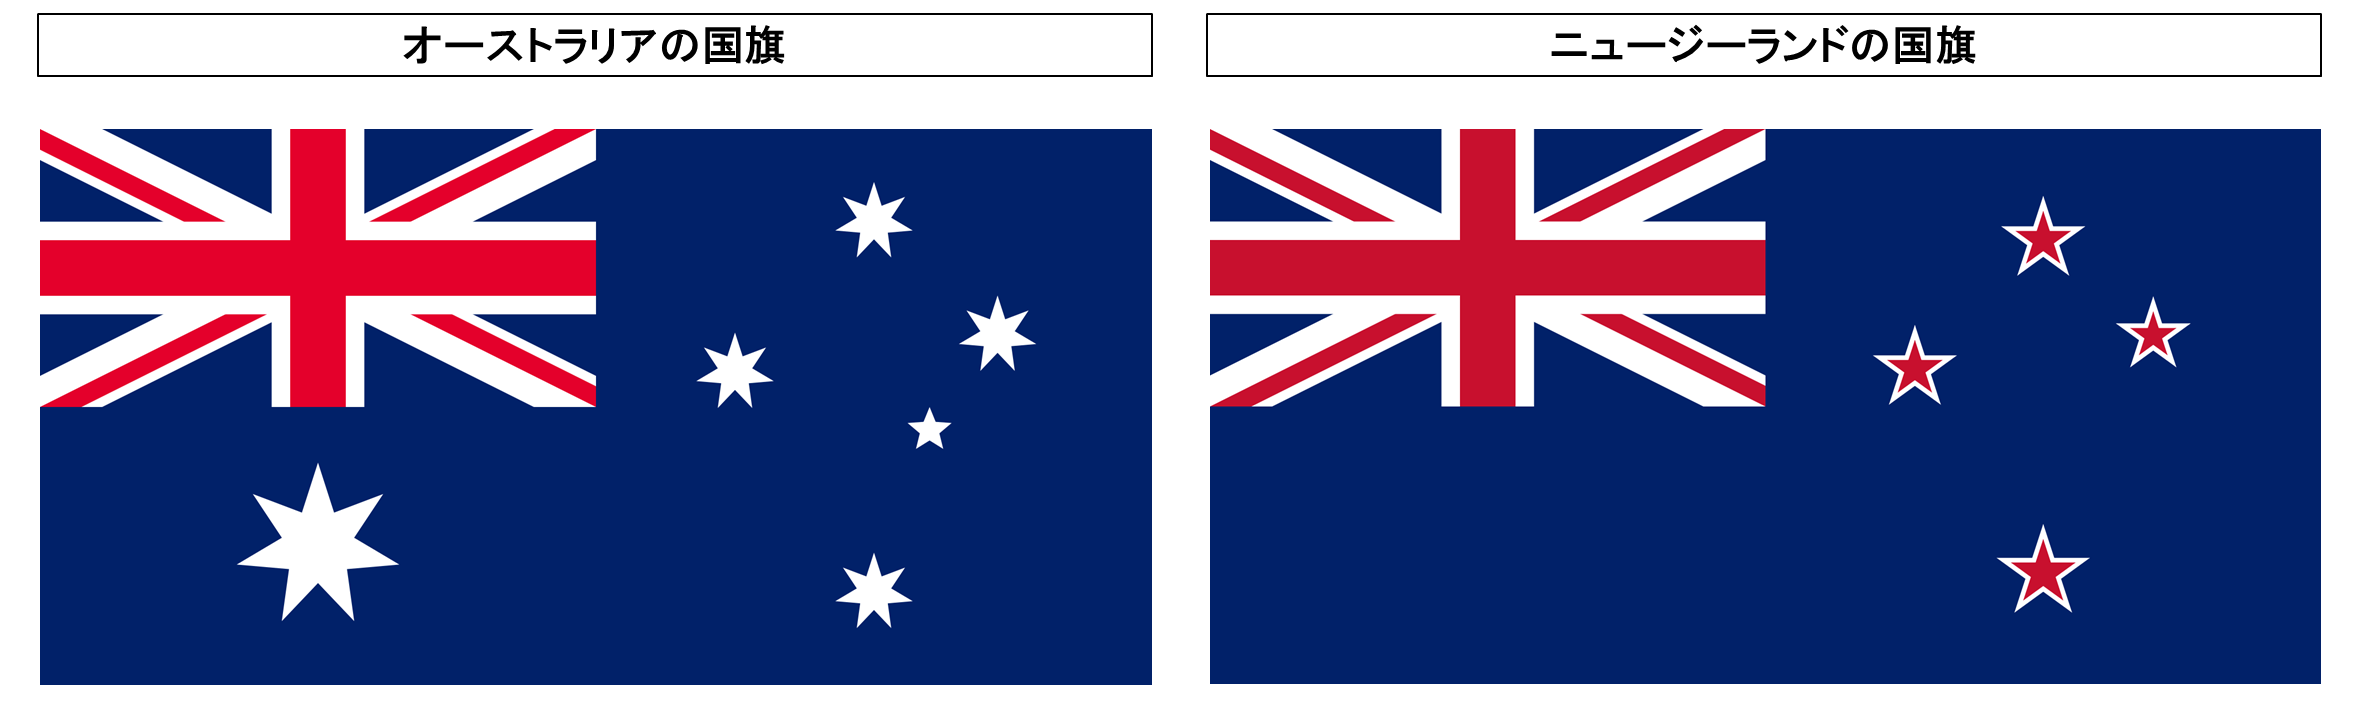 オーストラリアとニュージーランドの国旗の違いとは 星の色や形の違いに基づく全部で四つの具体的な特徴の違い Tantanの雑学と哲学の小部屋